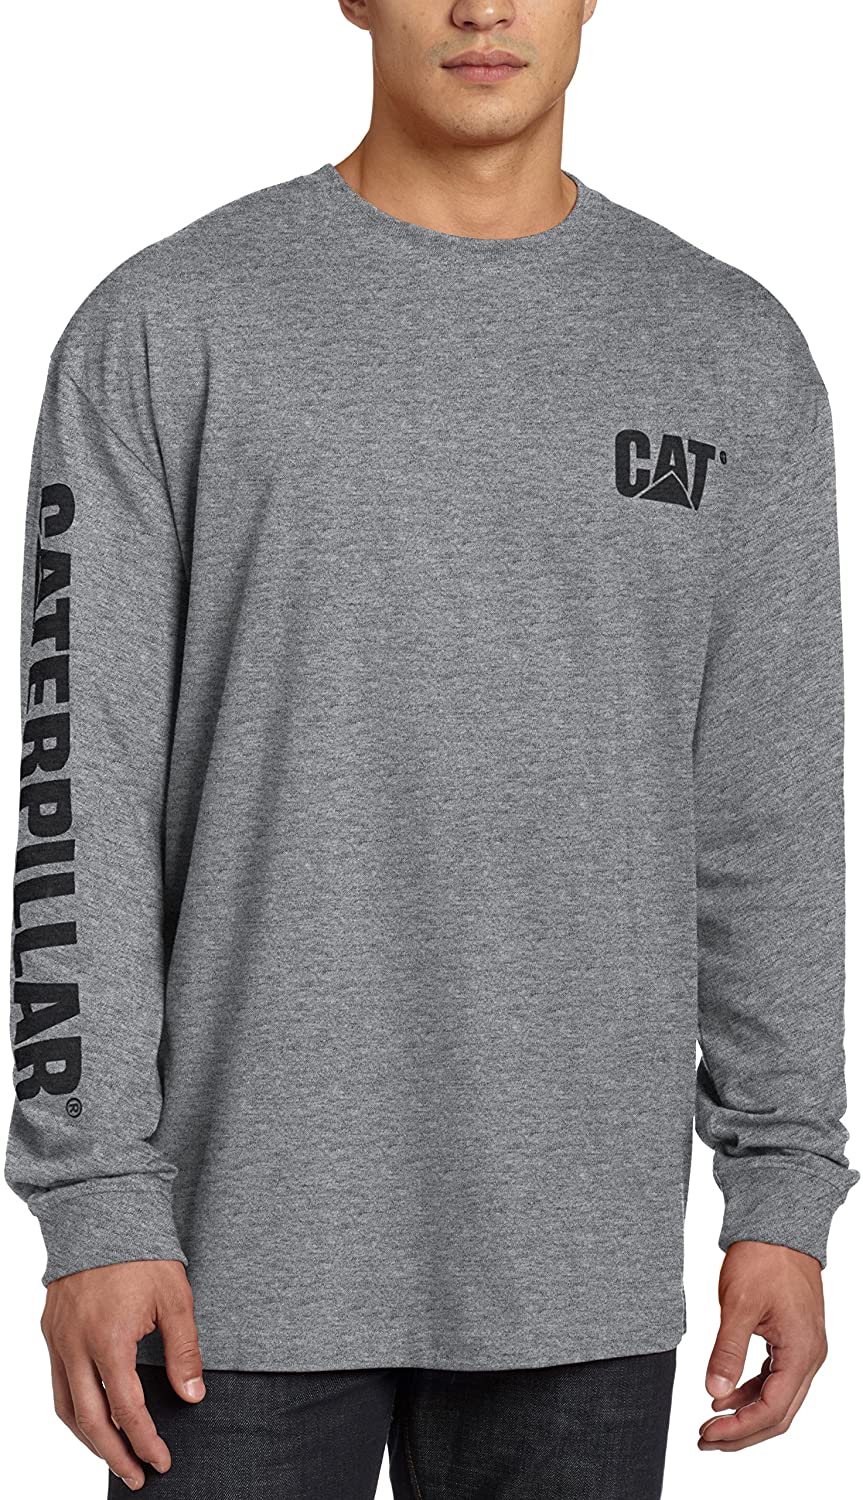 Caterpillar Men's Trademark Banner Long Sleeve T-Shirt Regular and Big & Tall Sizes 